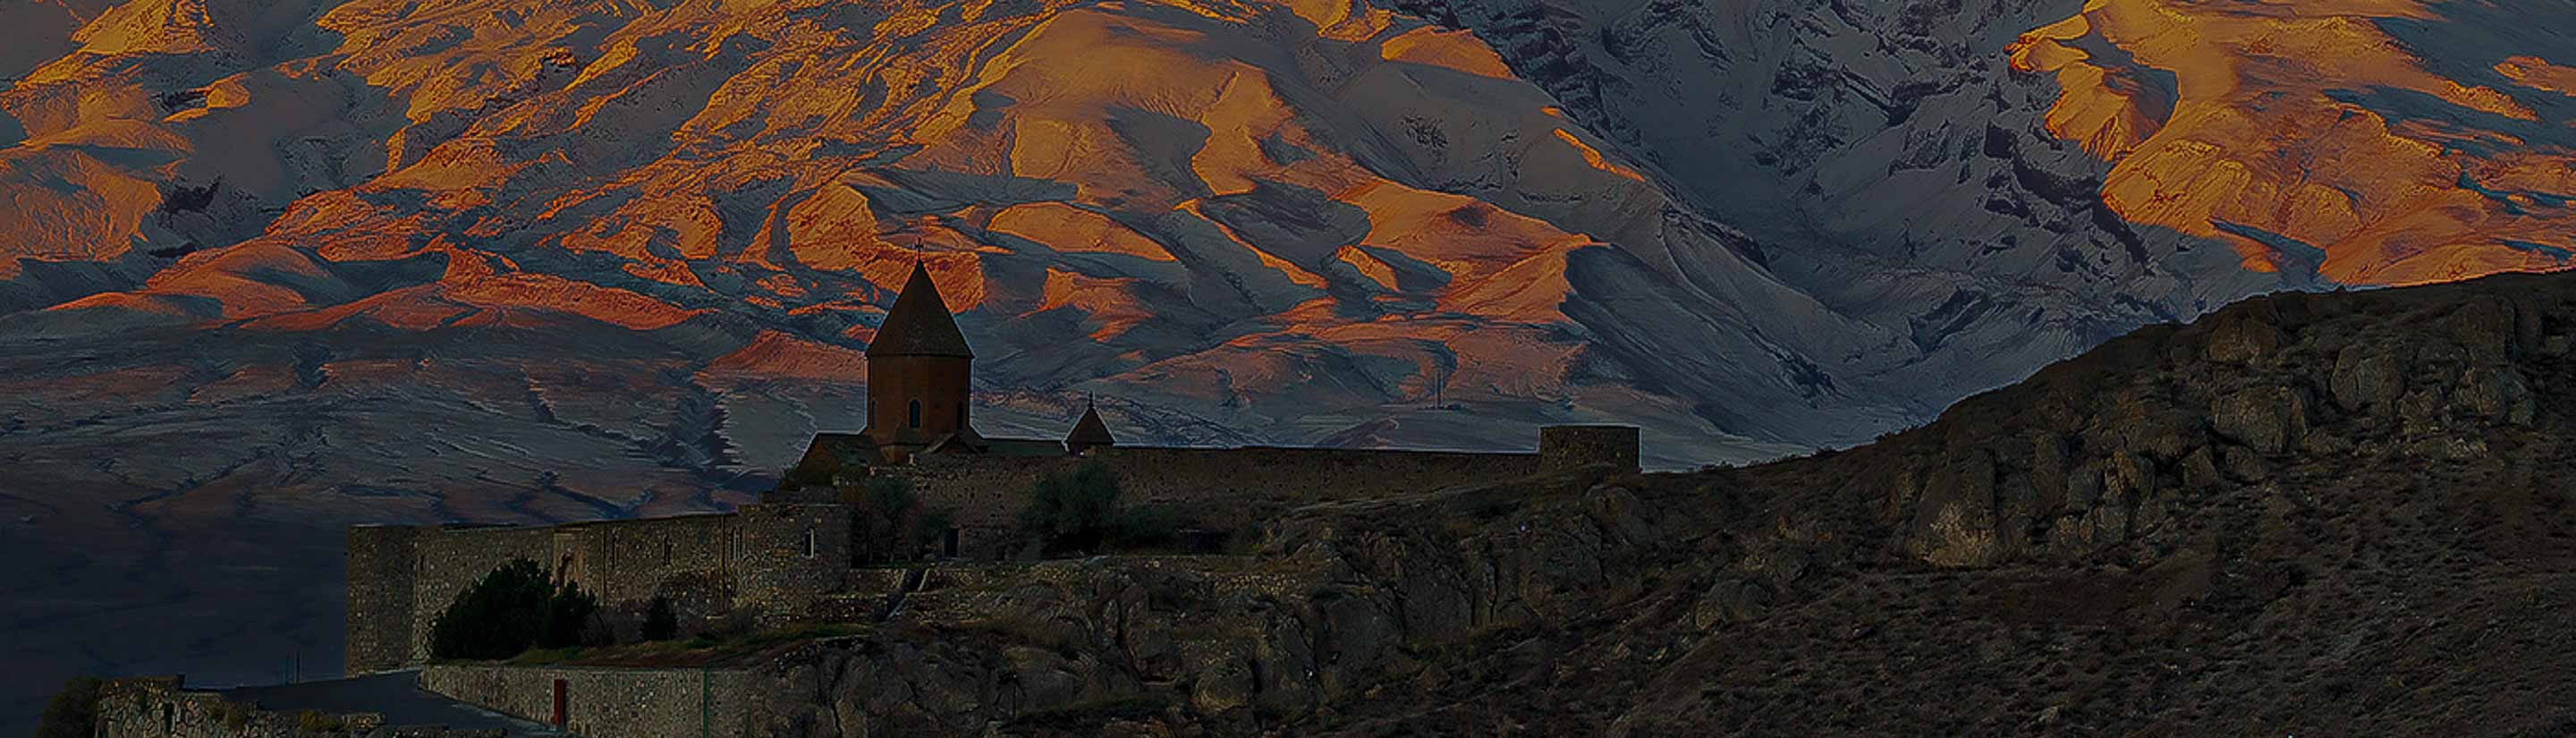 Armenien Kloster Chor Virap Schatten Berge